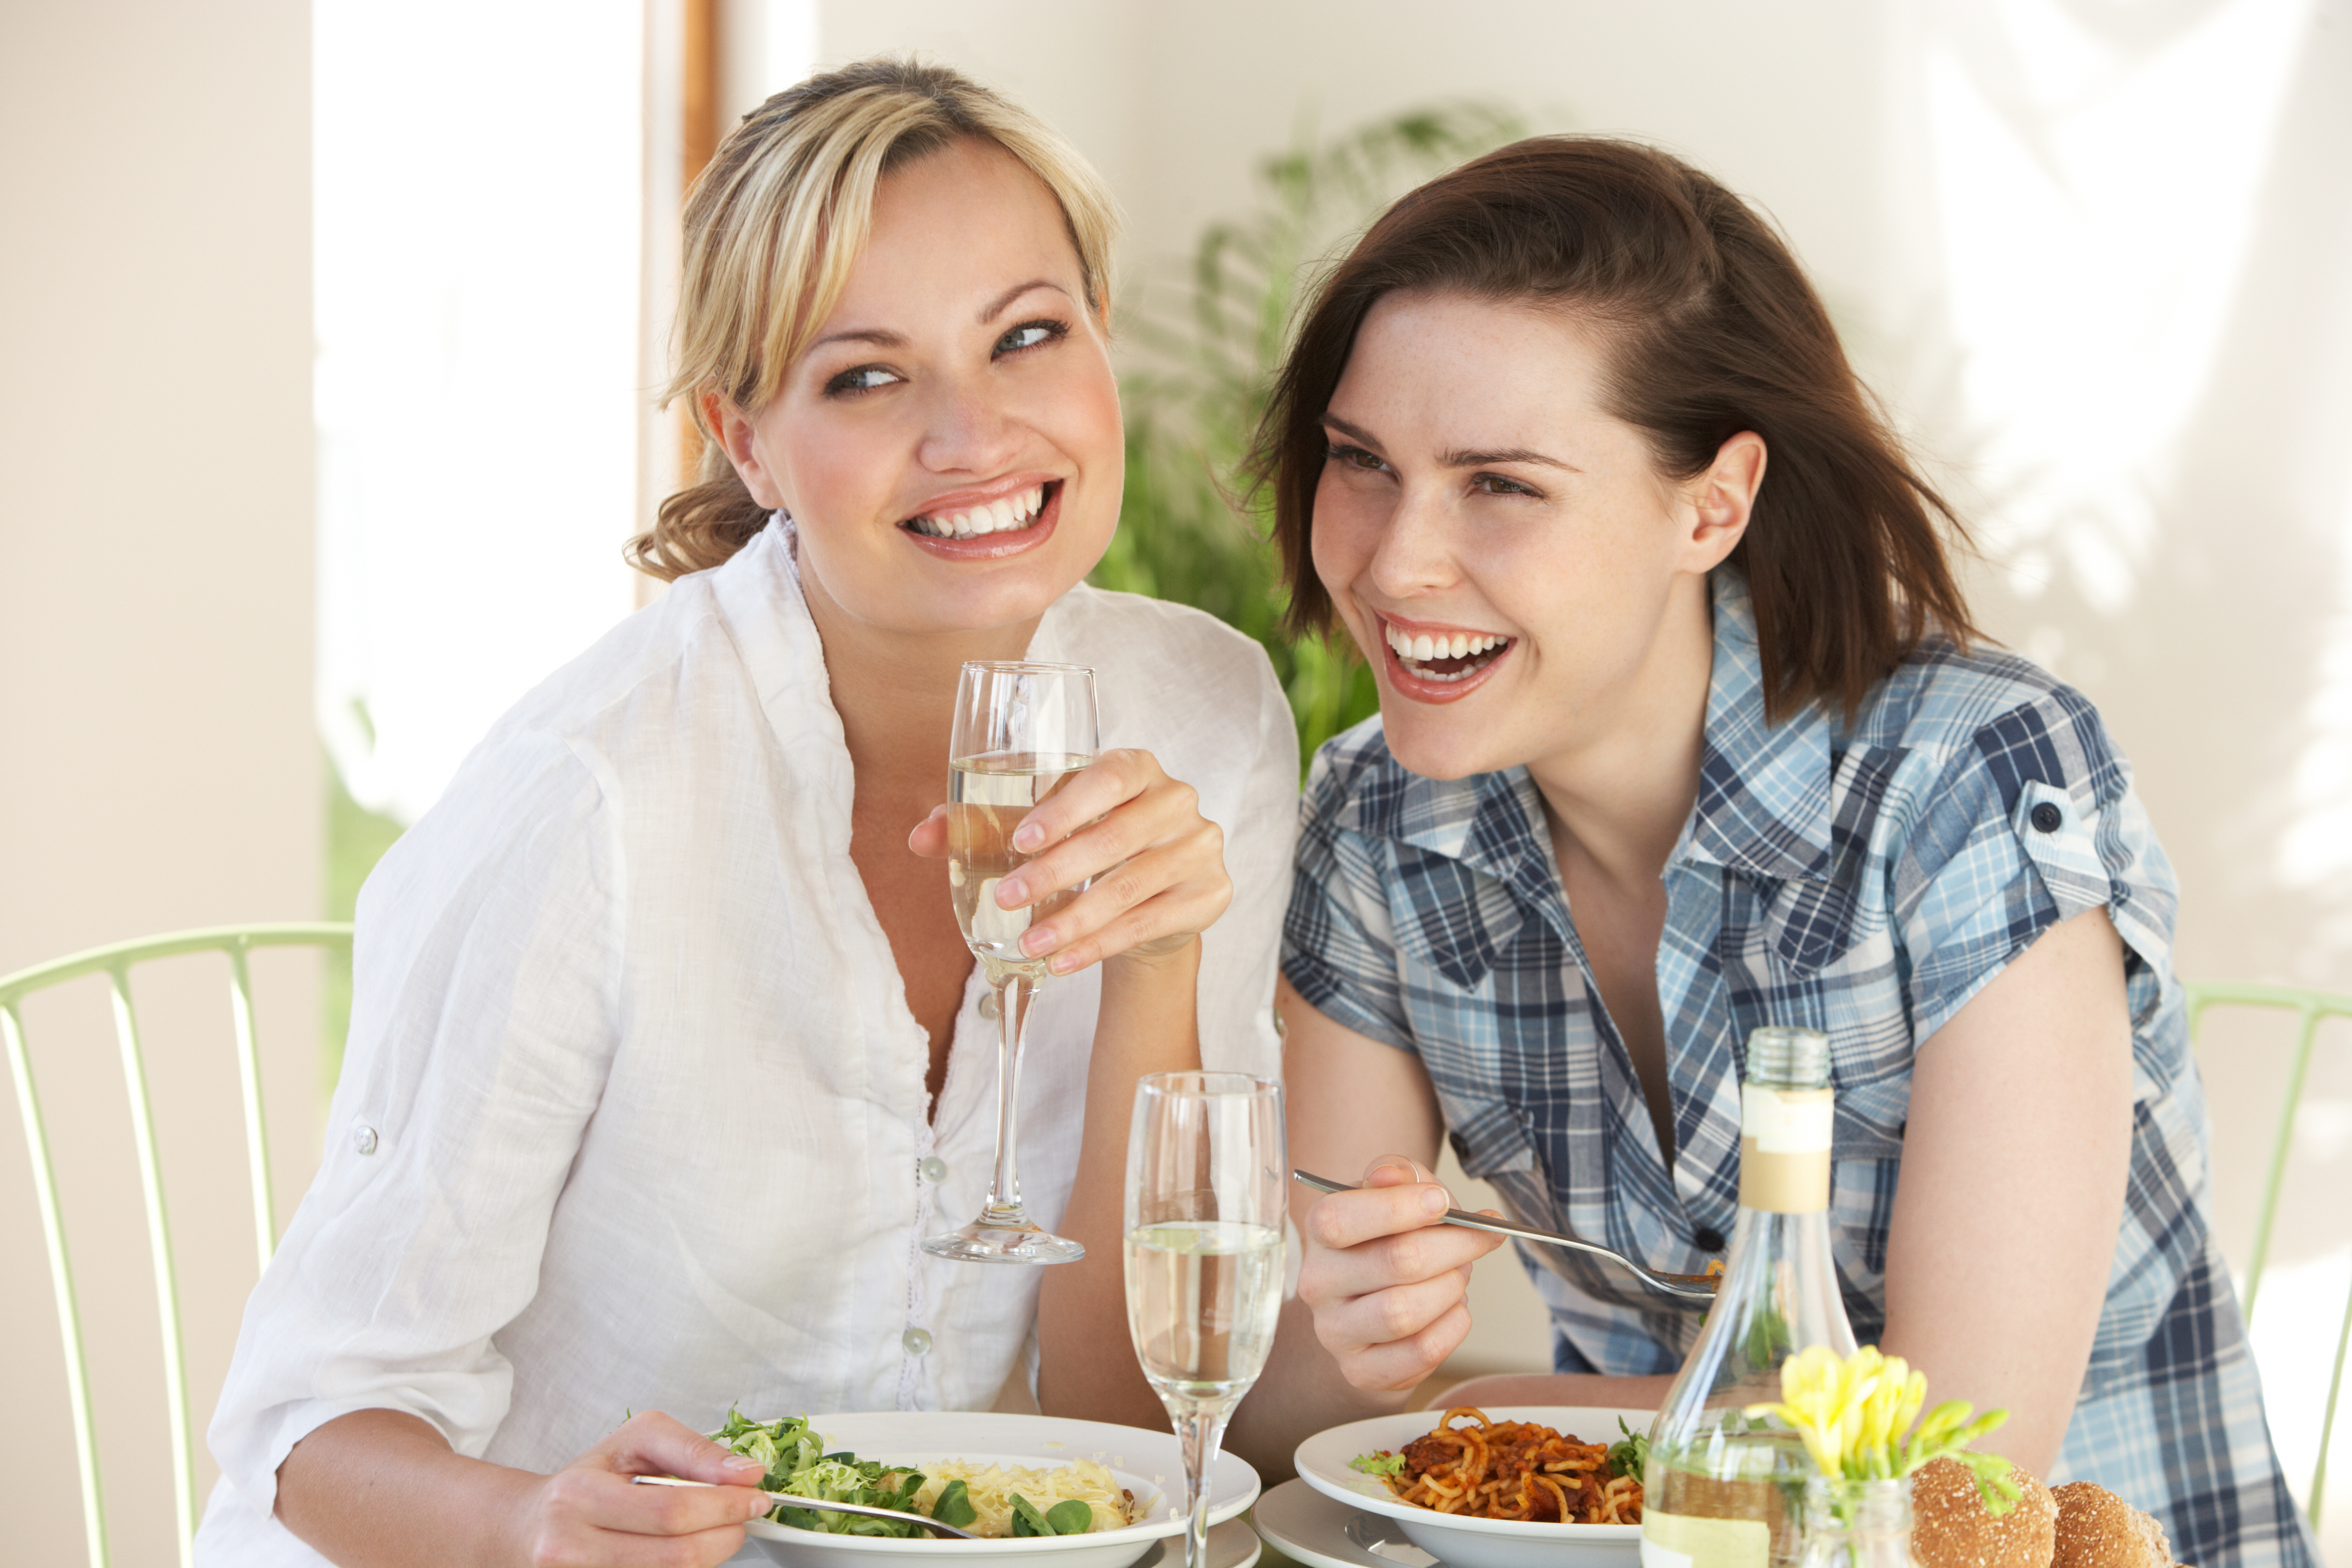 Deux femmes heureuses partageant des boissons et un repas | Source : Getty Images